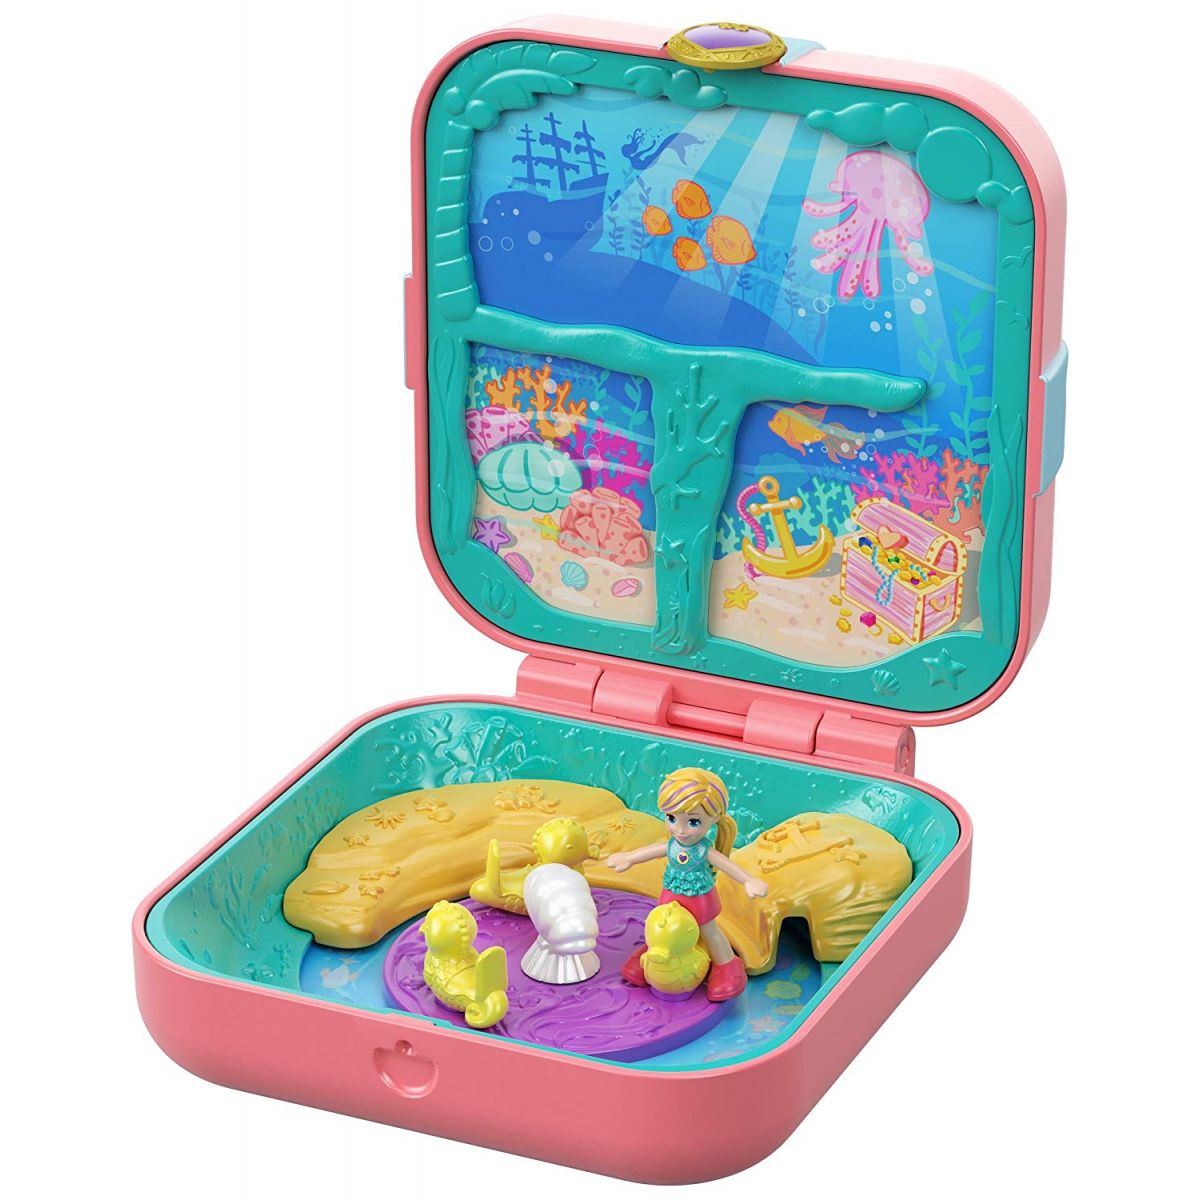 Mattel Polly Pocket pidi svět v krabičce Mermaid Cove